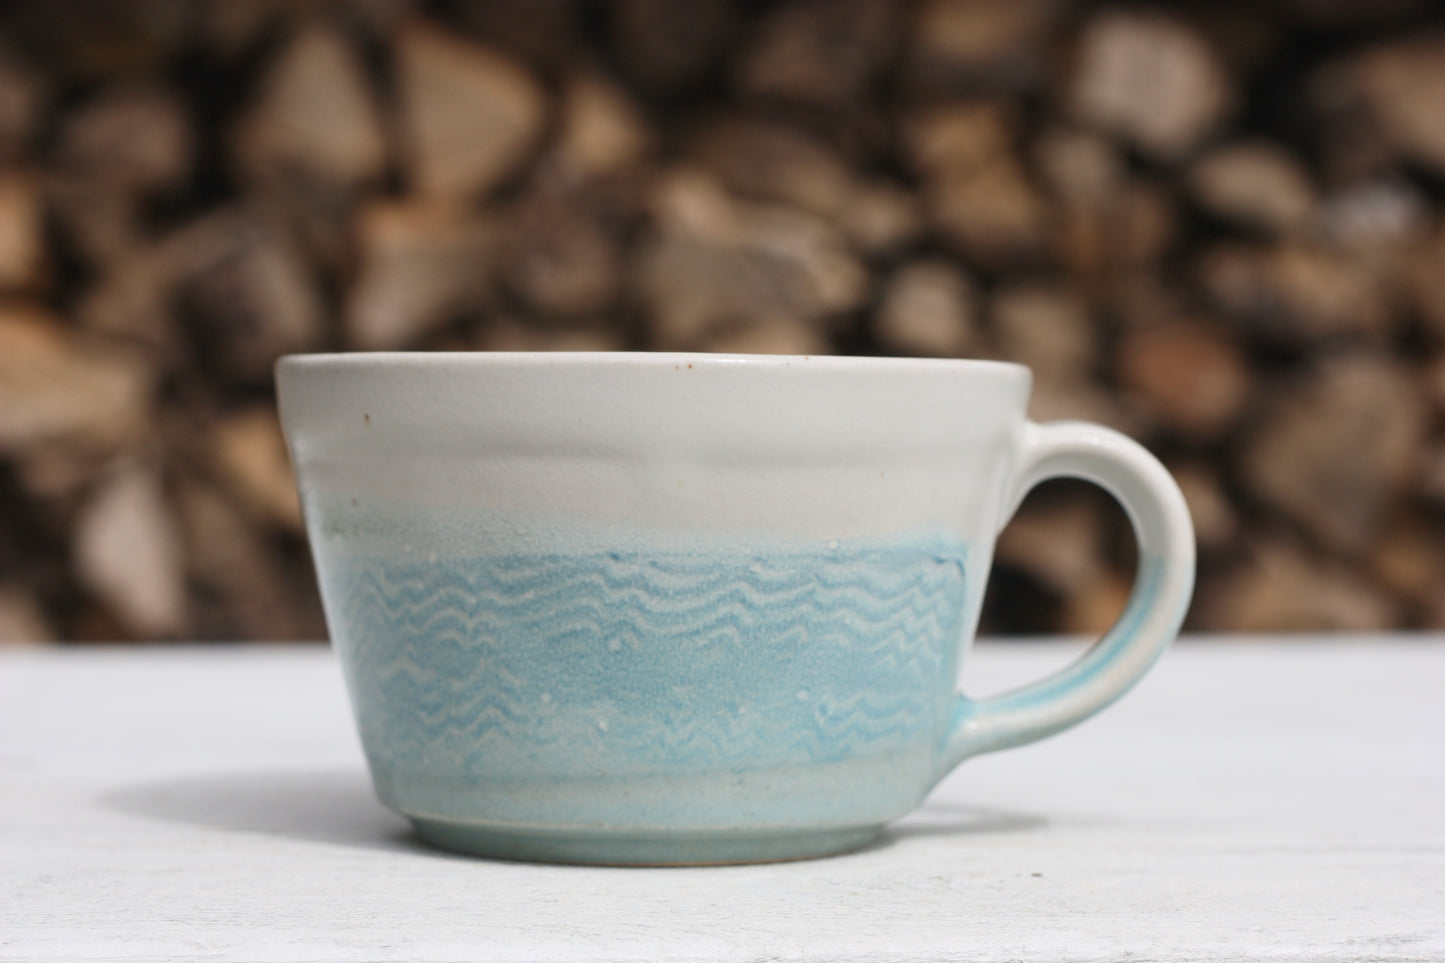 Cornish waves glazed Mug 12oz 350ml Medium Mug in Blue and White Glaze